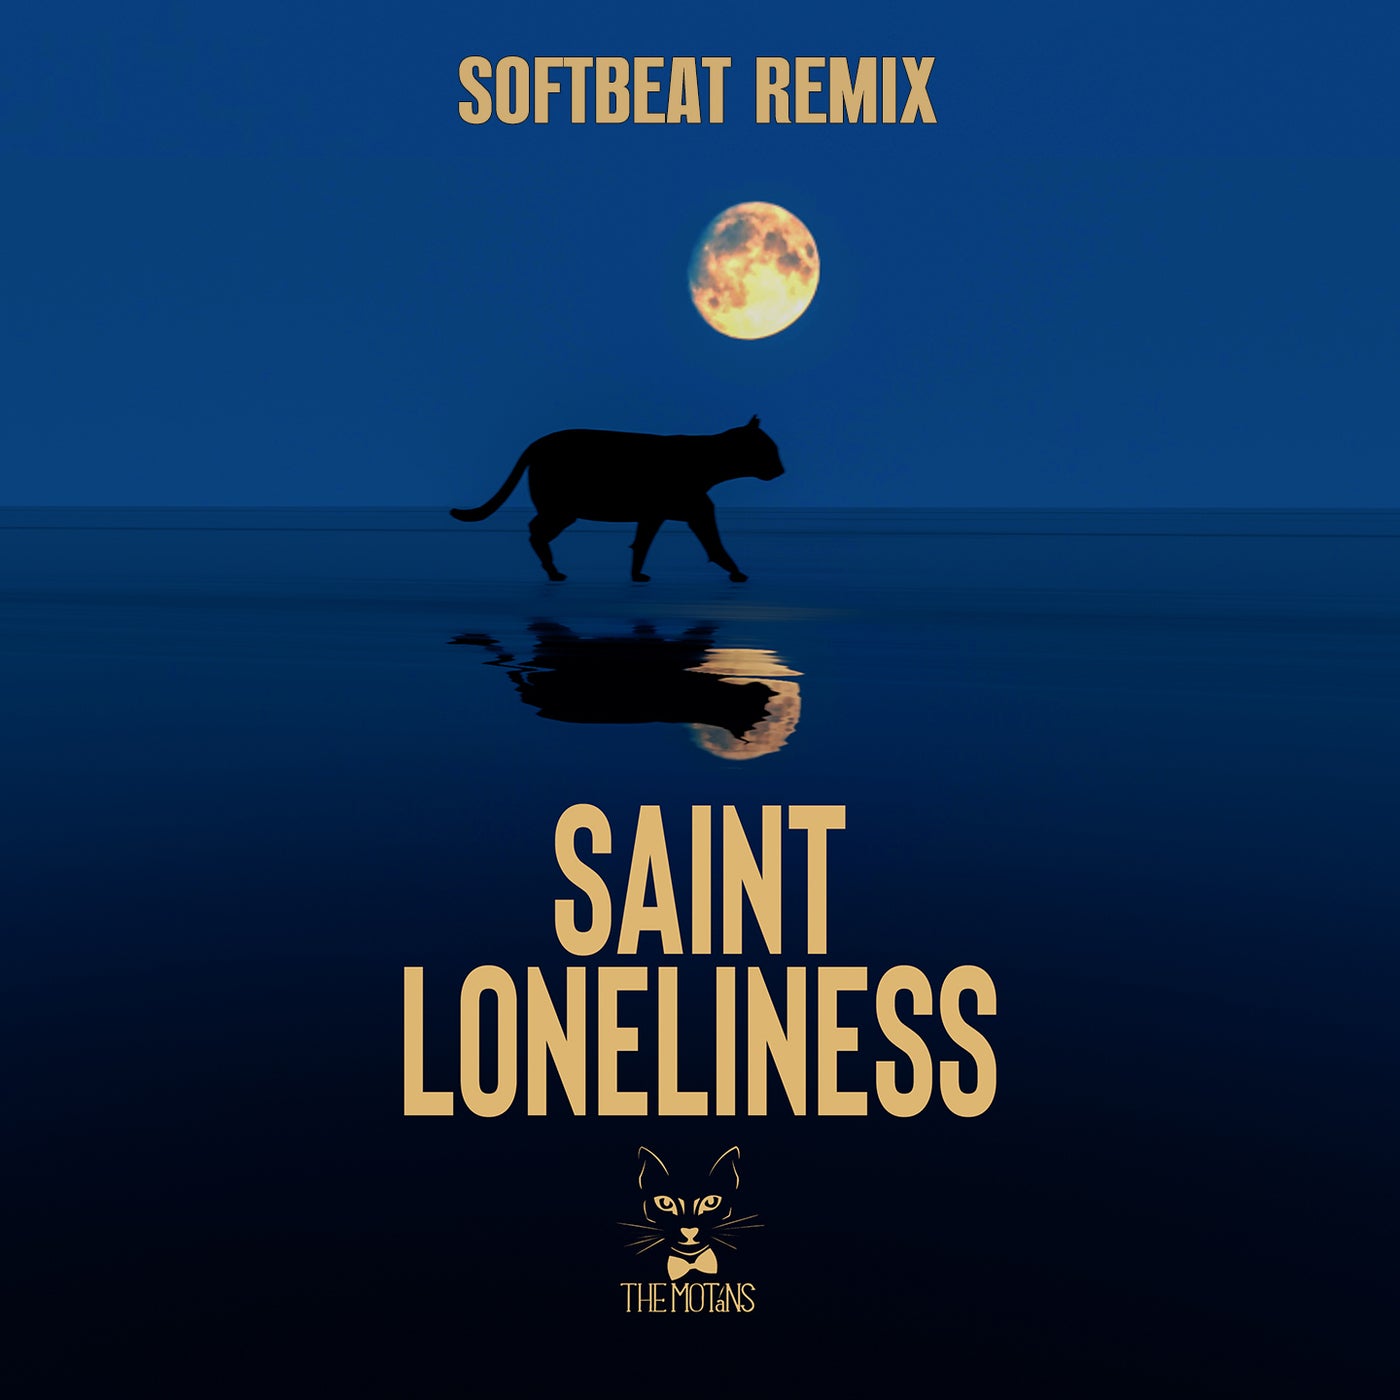 Saint Loneliness